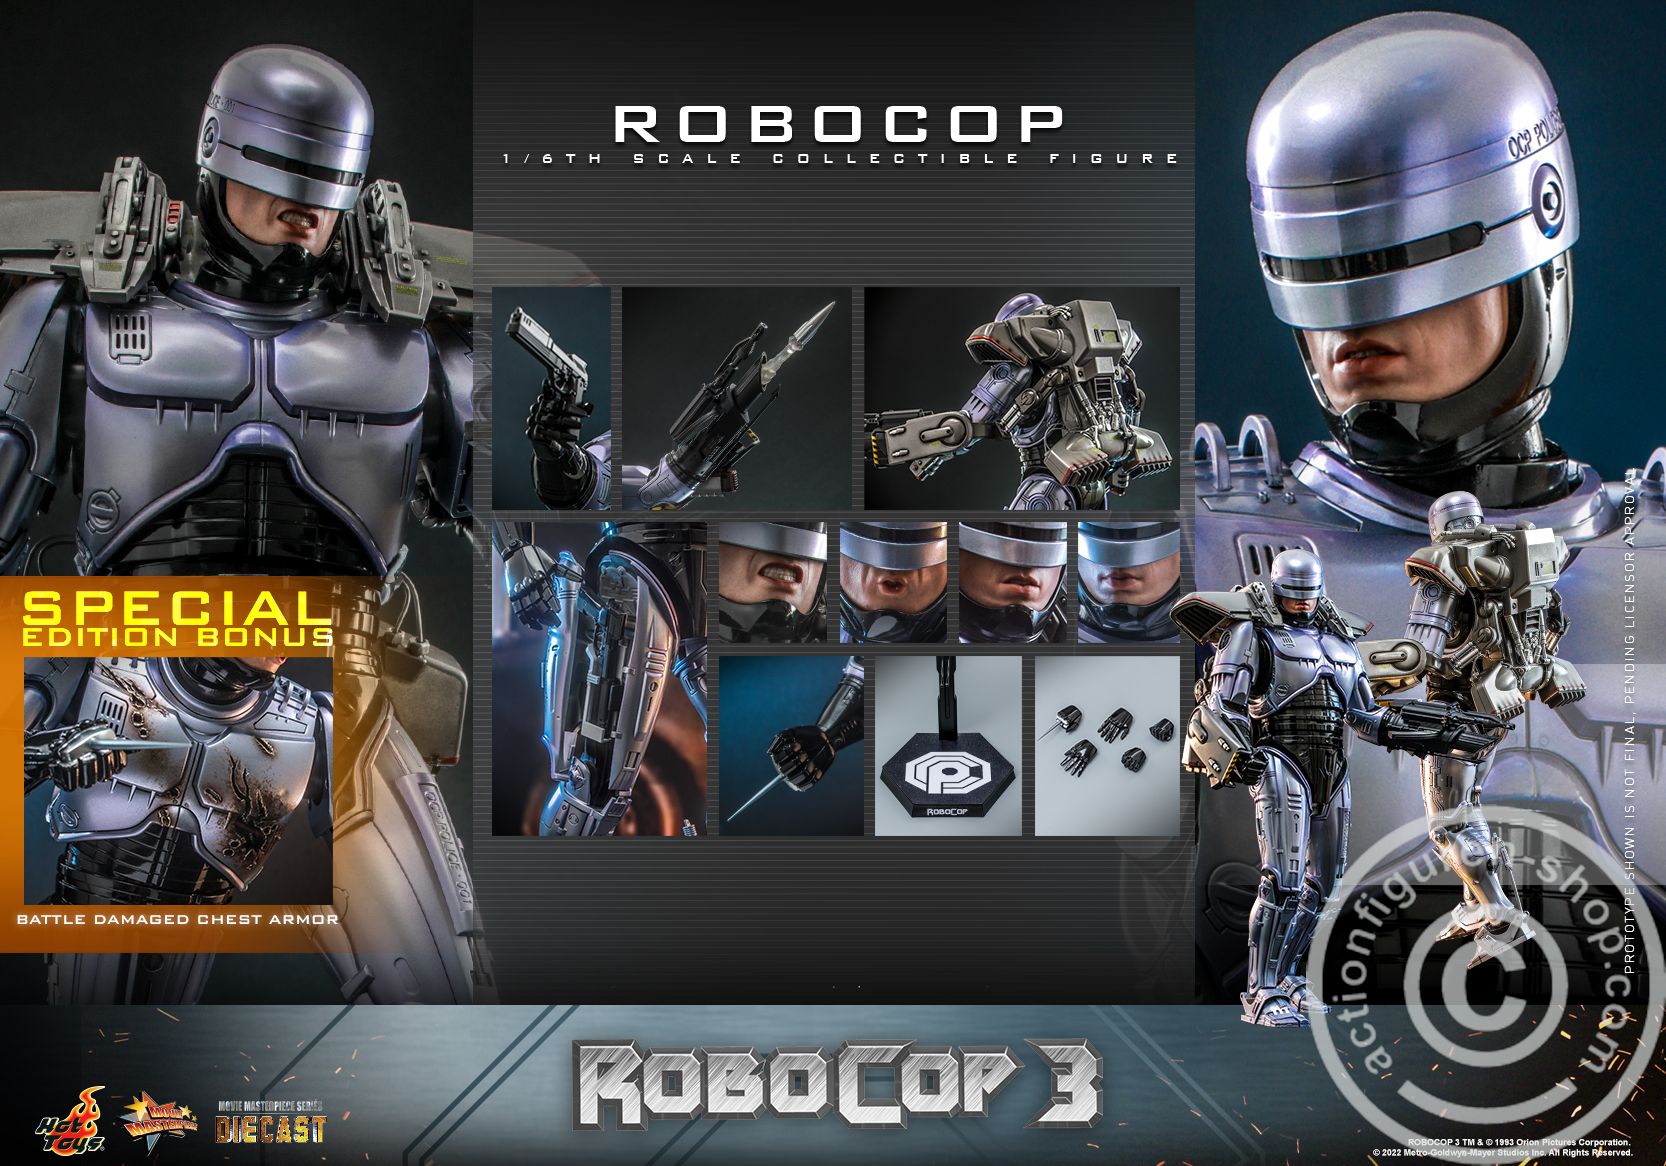 RoboCop 3 - RoboCop